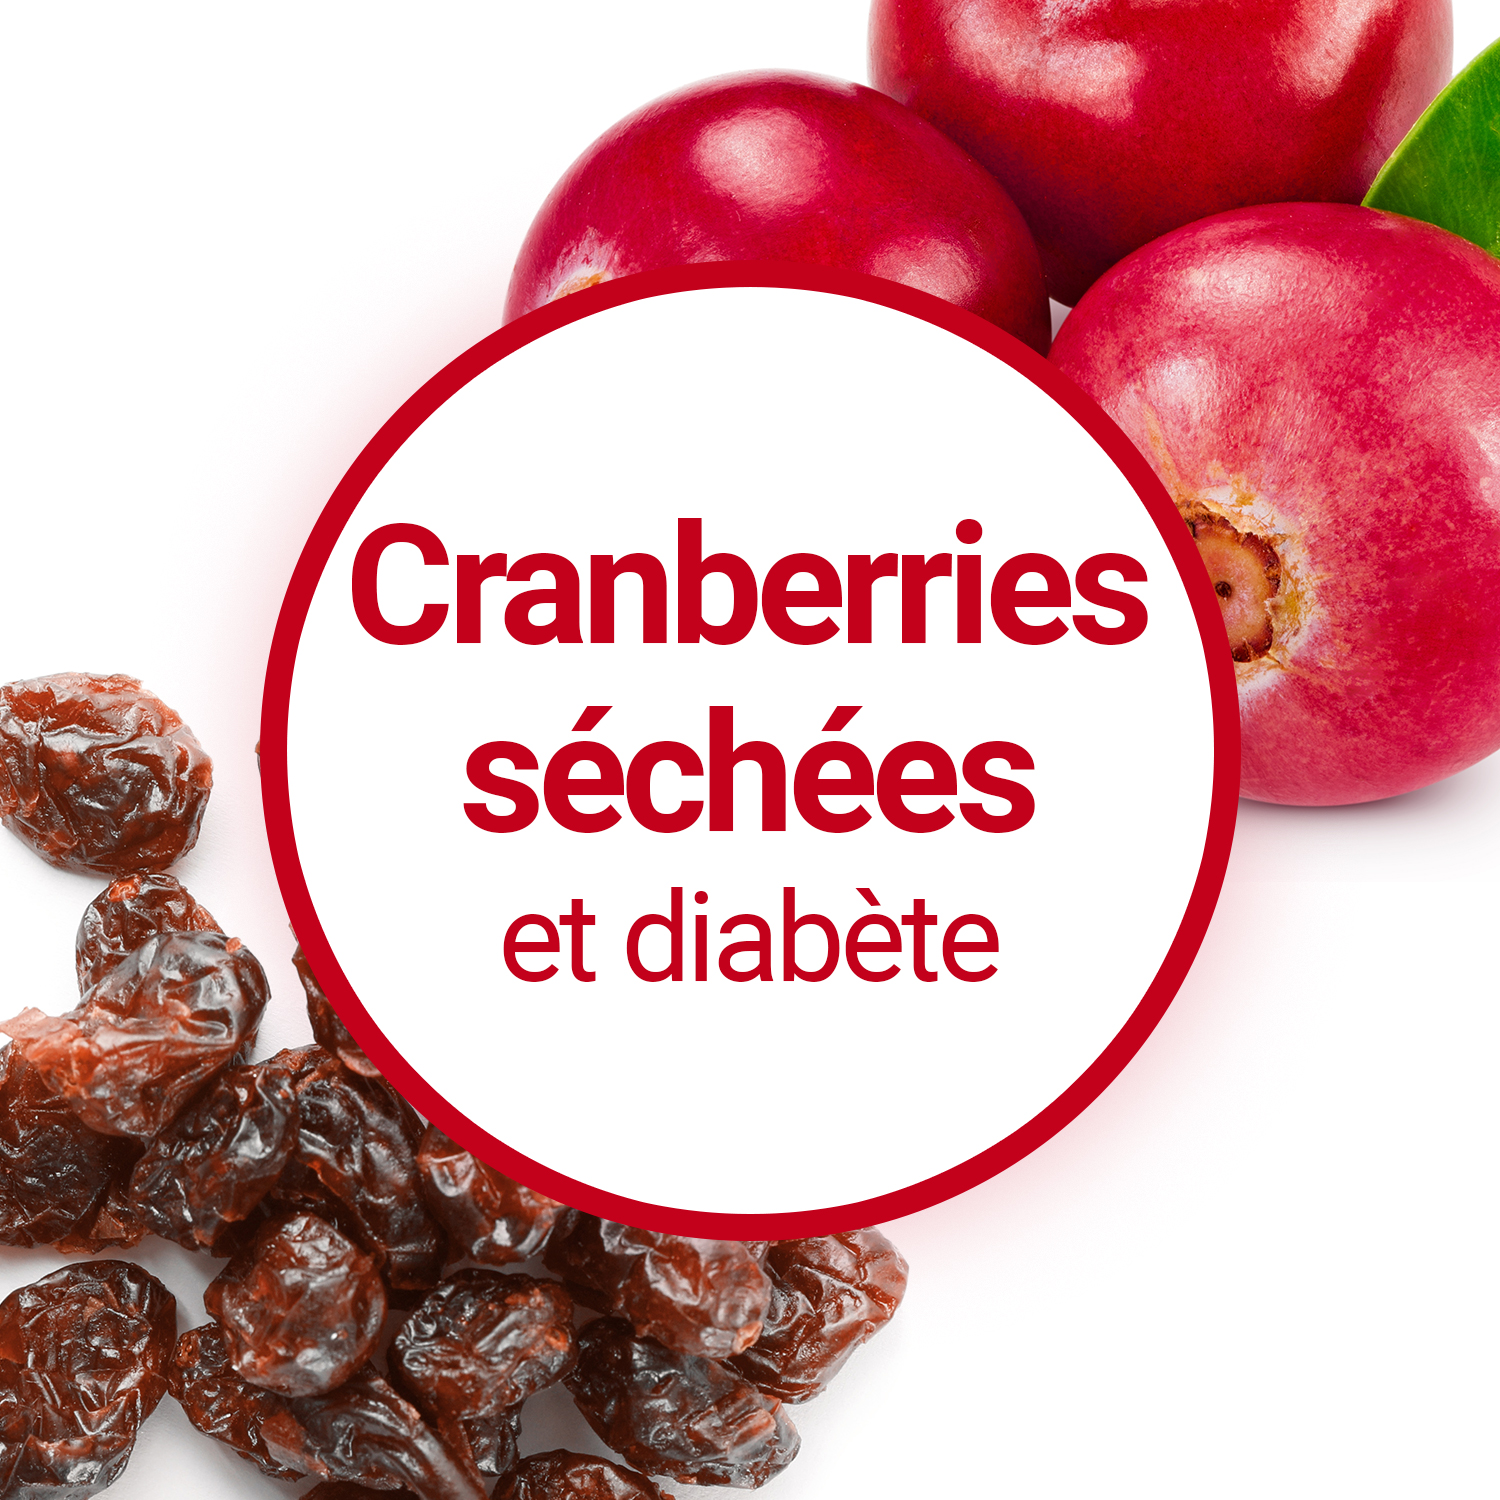 Le jus de Cranberry est-il efficace contre l'hypertension